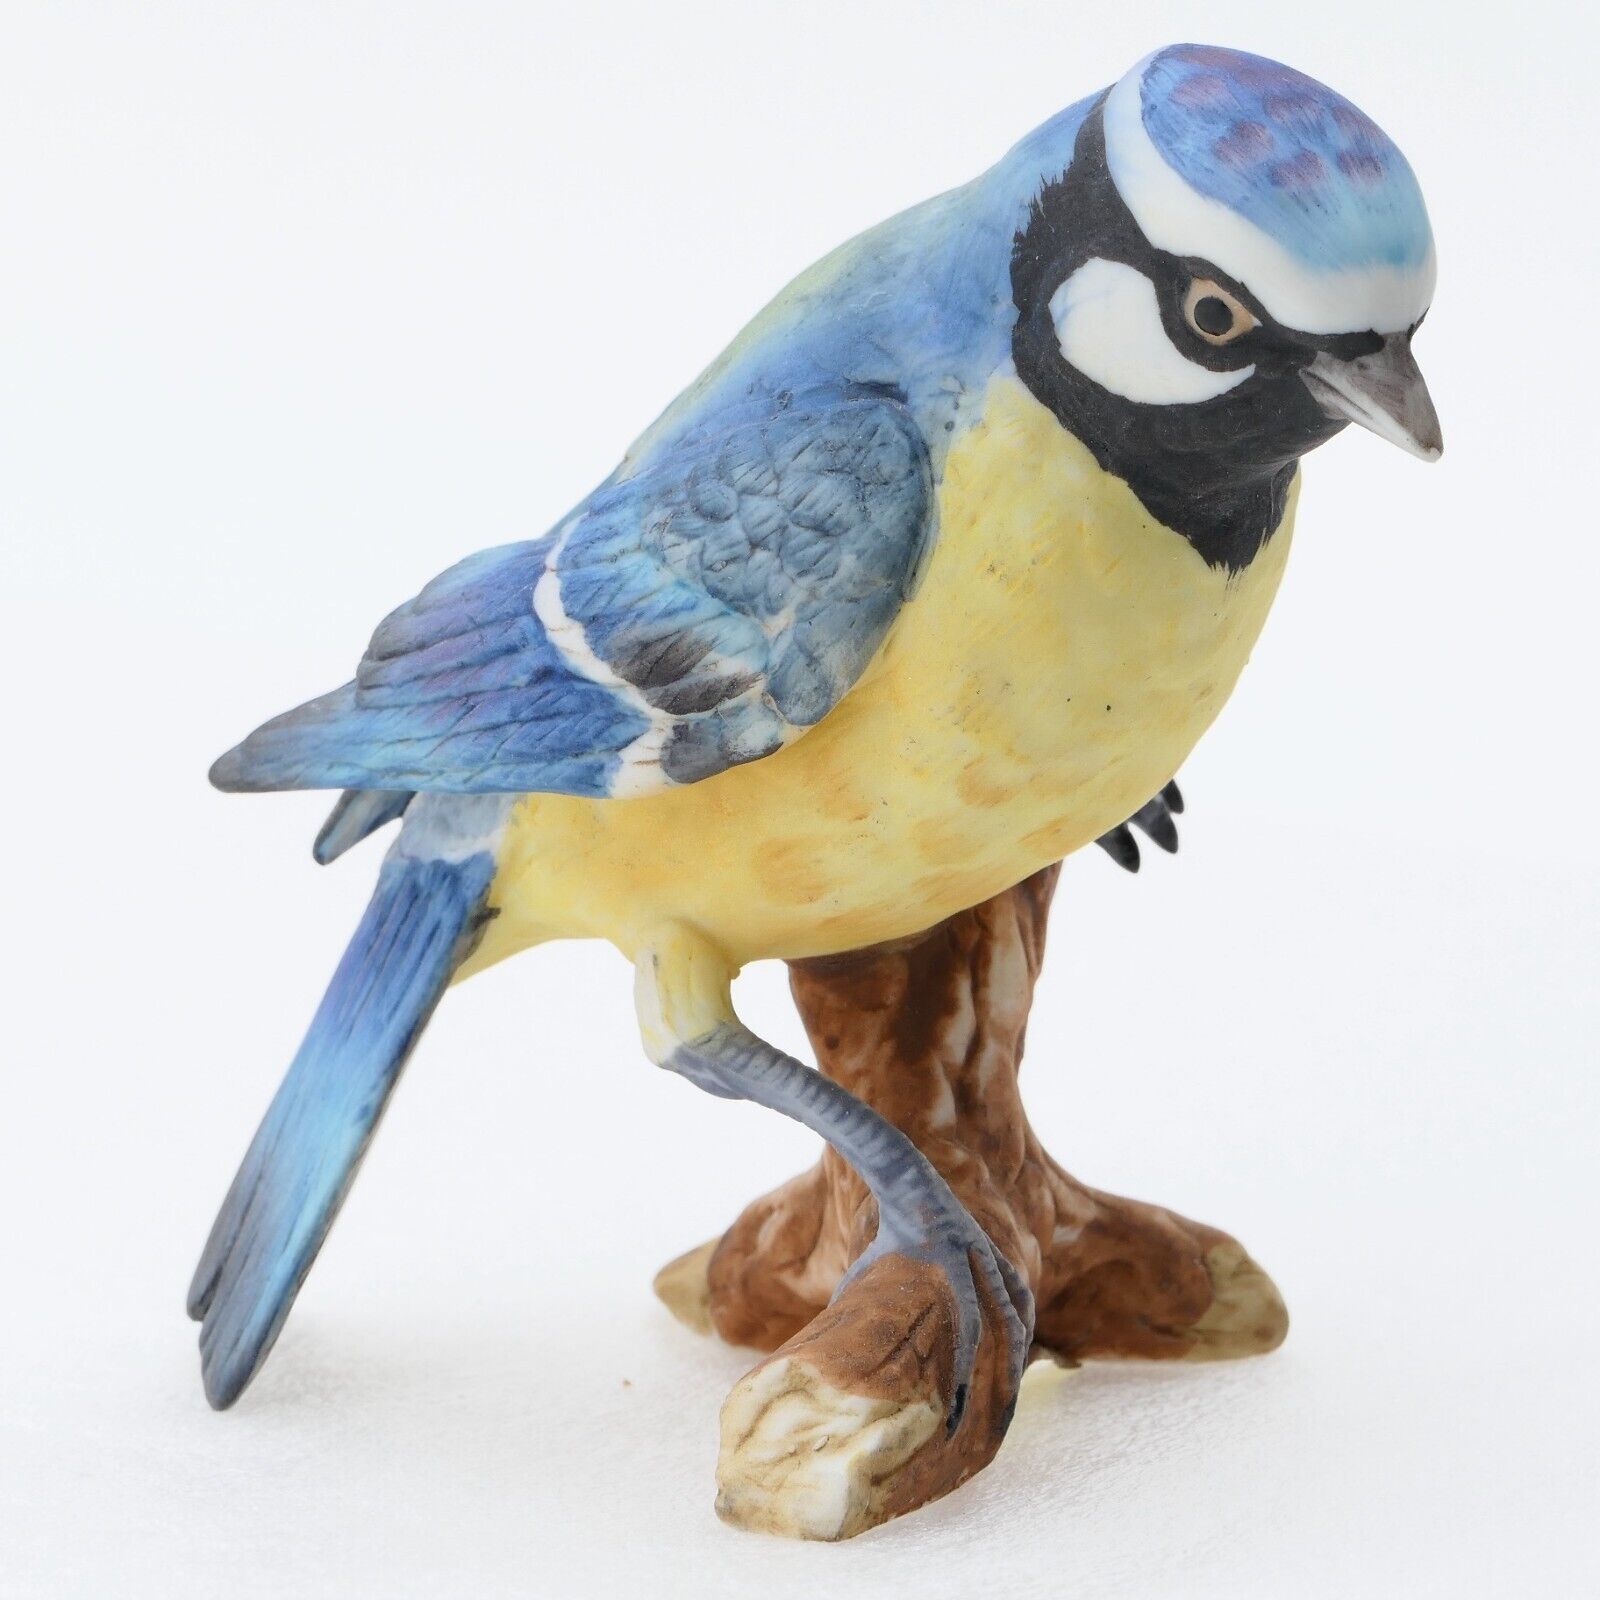 Deutsche Noritake Blue & Yellow Porcelain Bird Figurine - Vintage